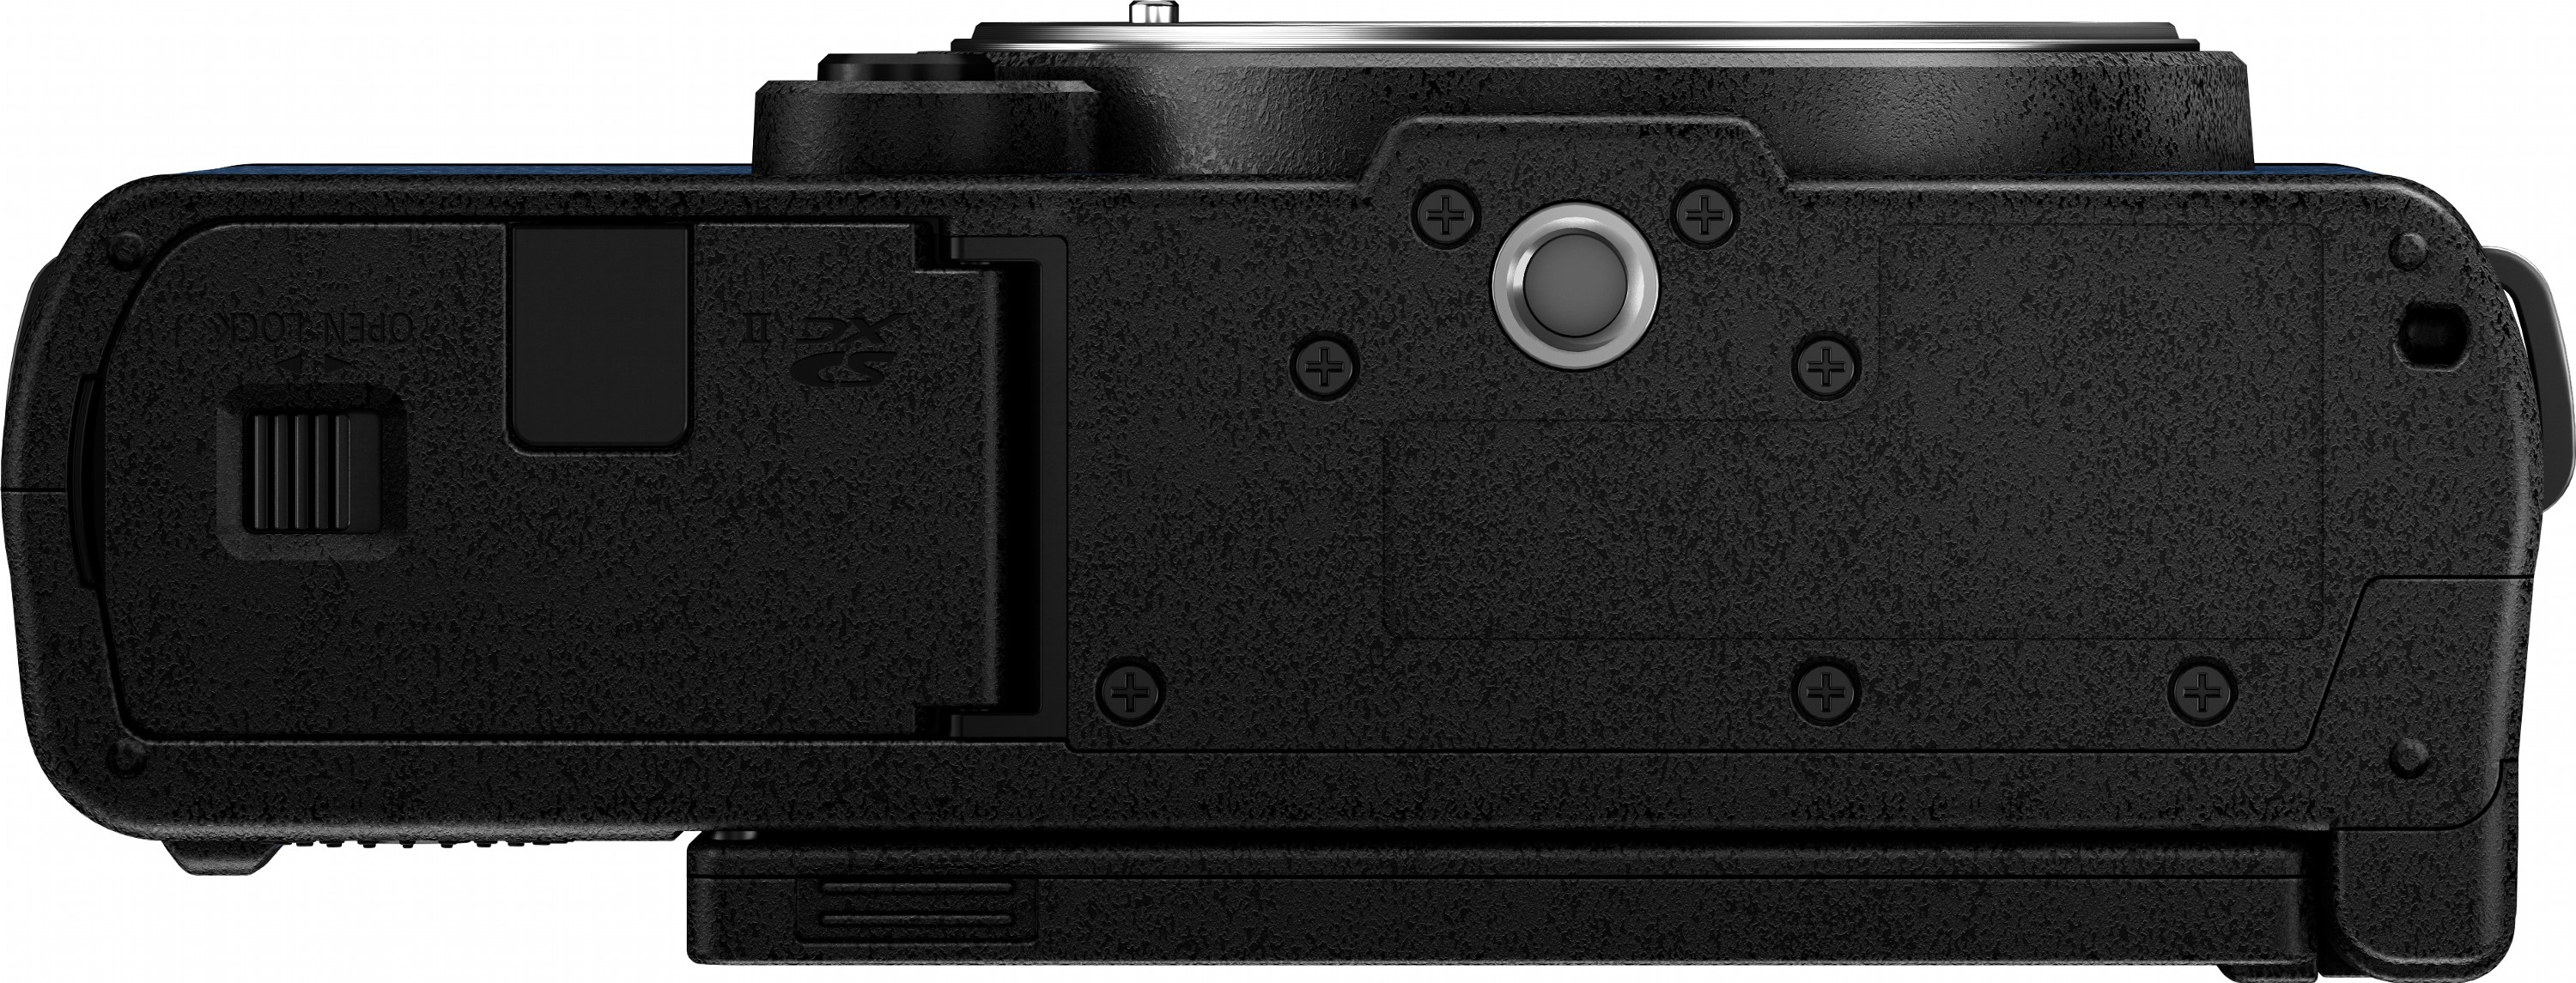 Фотоапарат Panasonic Lumix DC-S9 + 20-60mm f/3.5-5.6 Night Blue (DC-S9KE-A)фото10